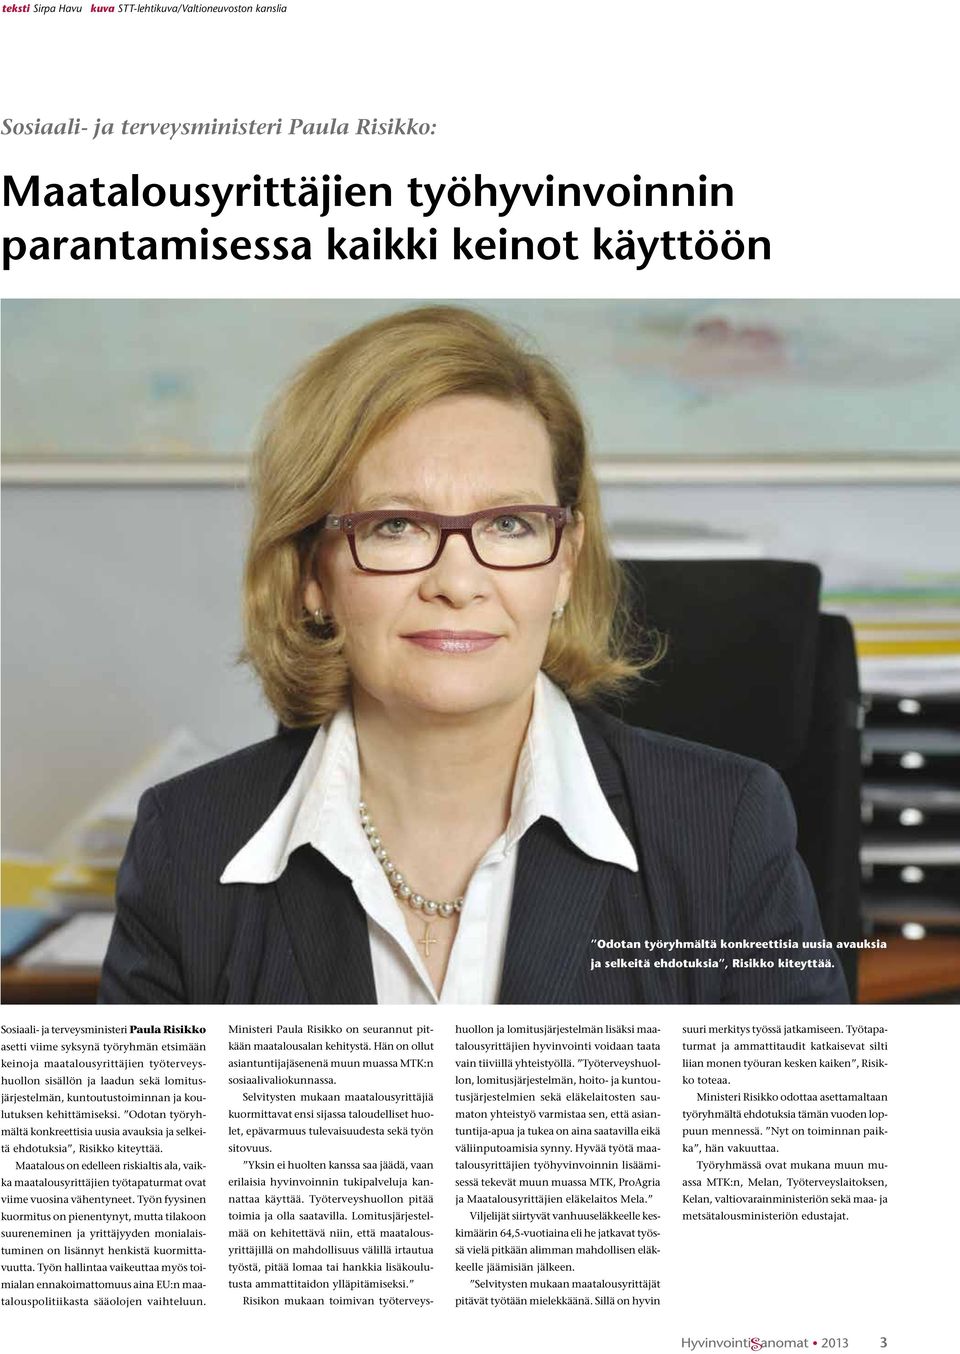 Sosiaali- ja terveysministeri Paula Risikko asetti viime syksynä työryhmän etsimään keinoja maatalousyrittäjien työterveyshuollon sisällön ja laadun sekä lomitusjärjestelmän, kuntoutustoiminnan ja